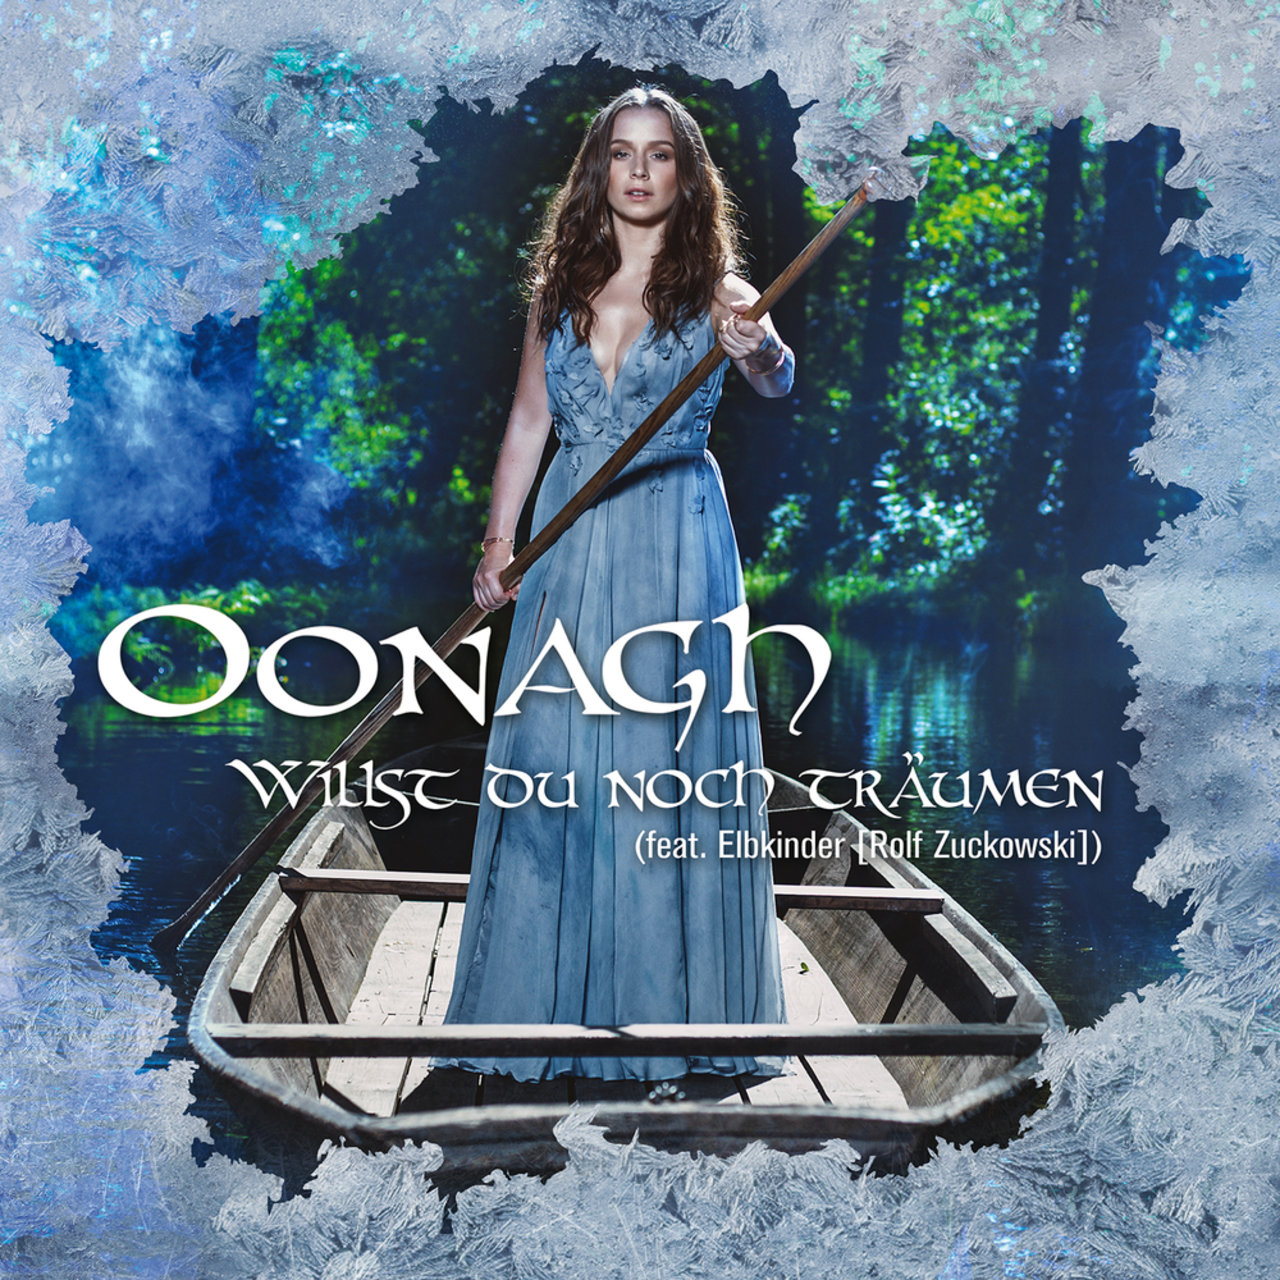 Oonagh ft. featuring Elbkinder (Rolf Zuckowski) Willst du noch träumen cover artwork